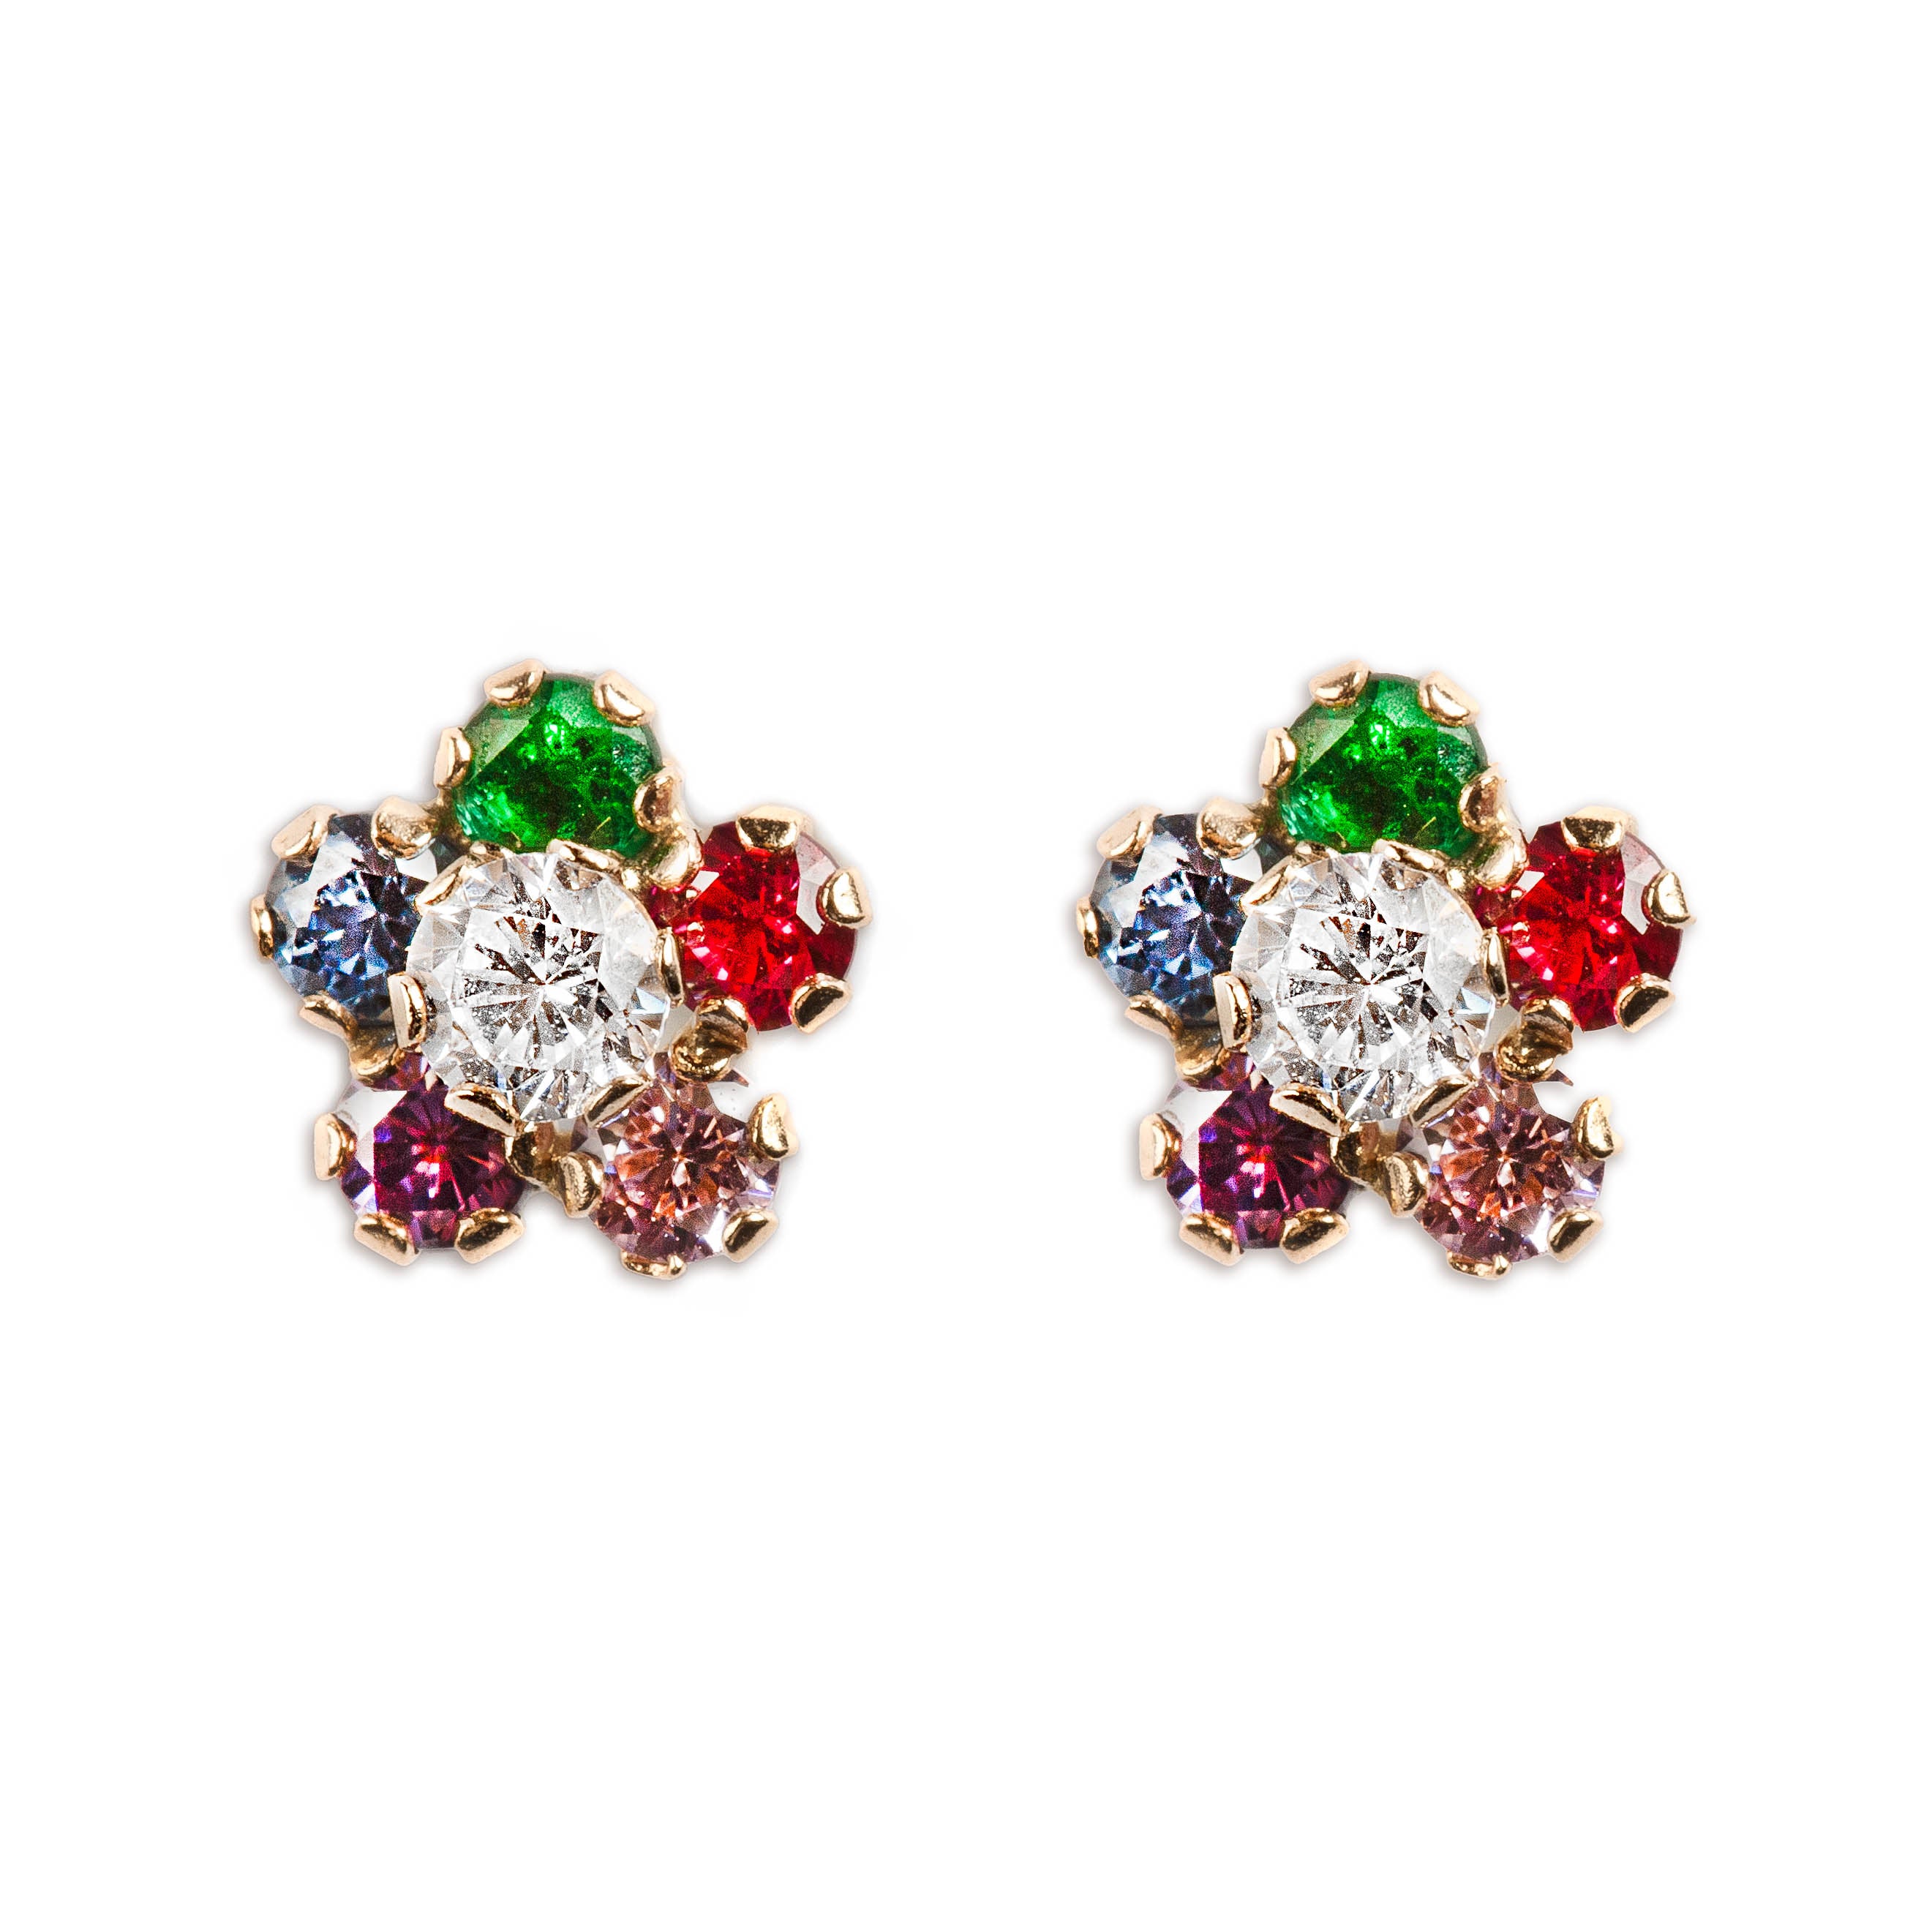 Cute opal flower earrings – Victorious